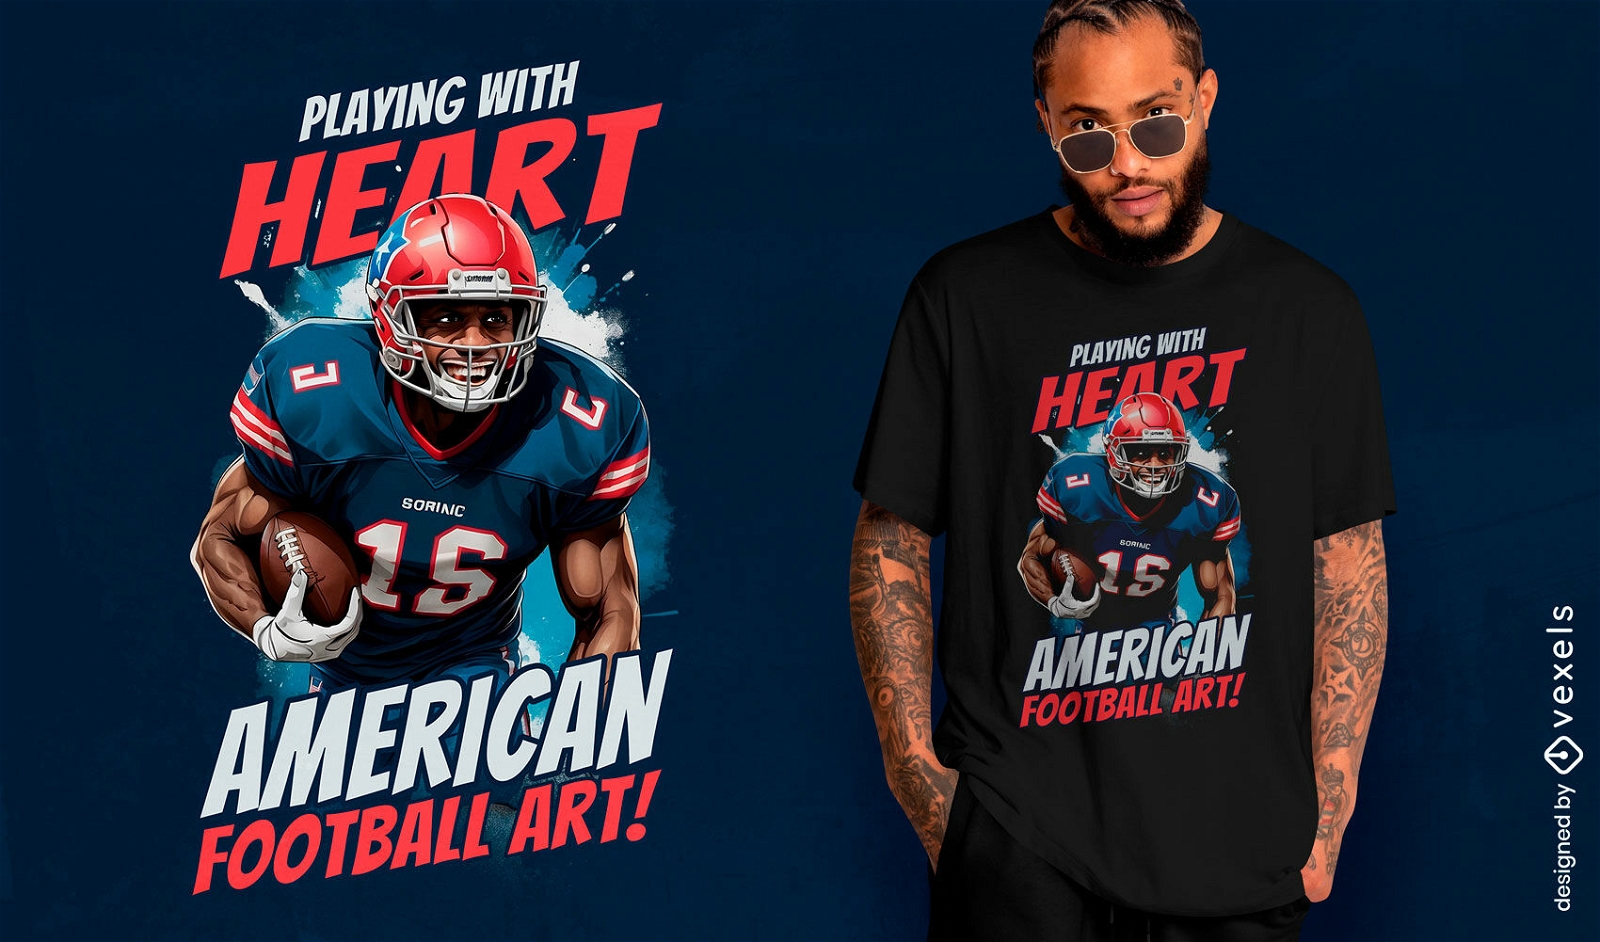 American football art t-shirt design